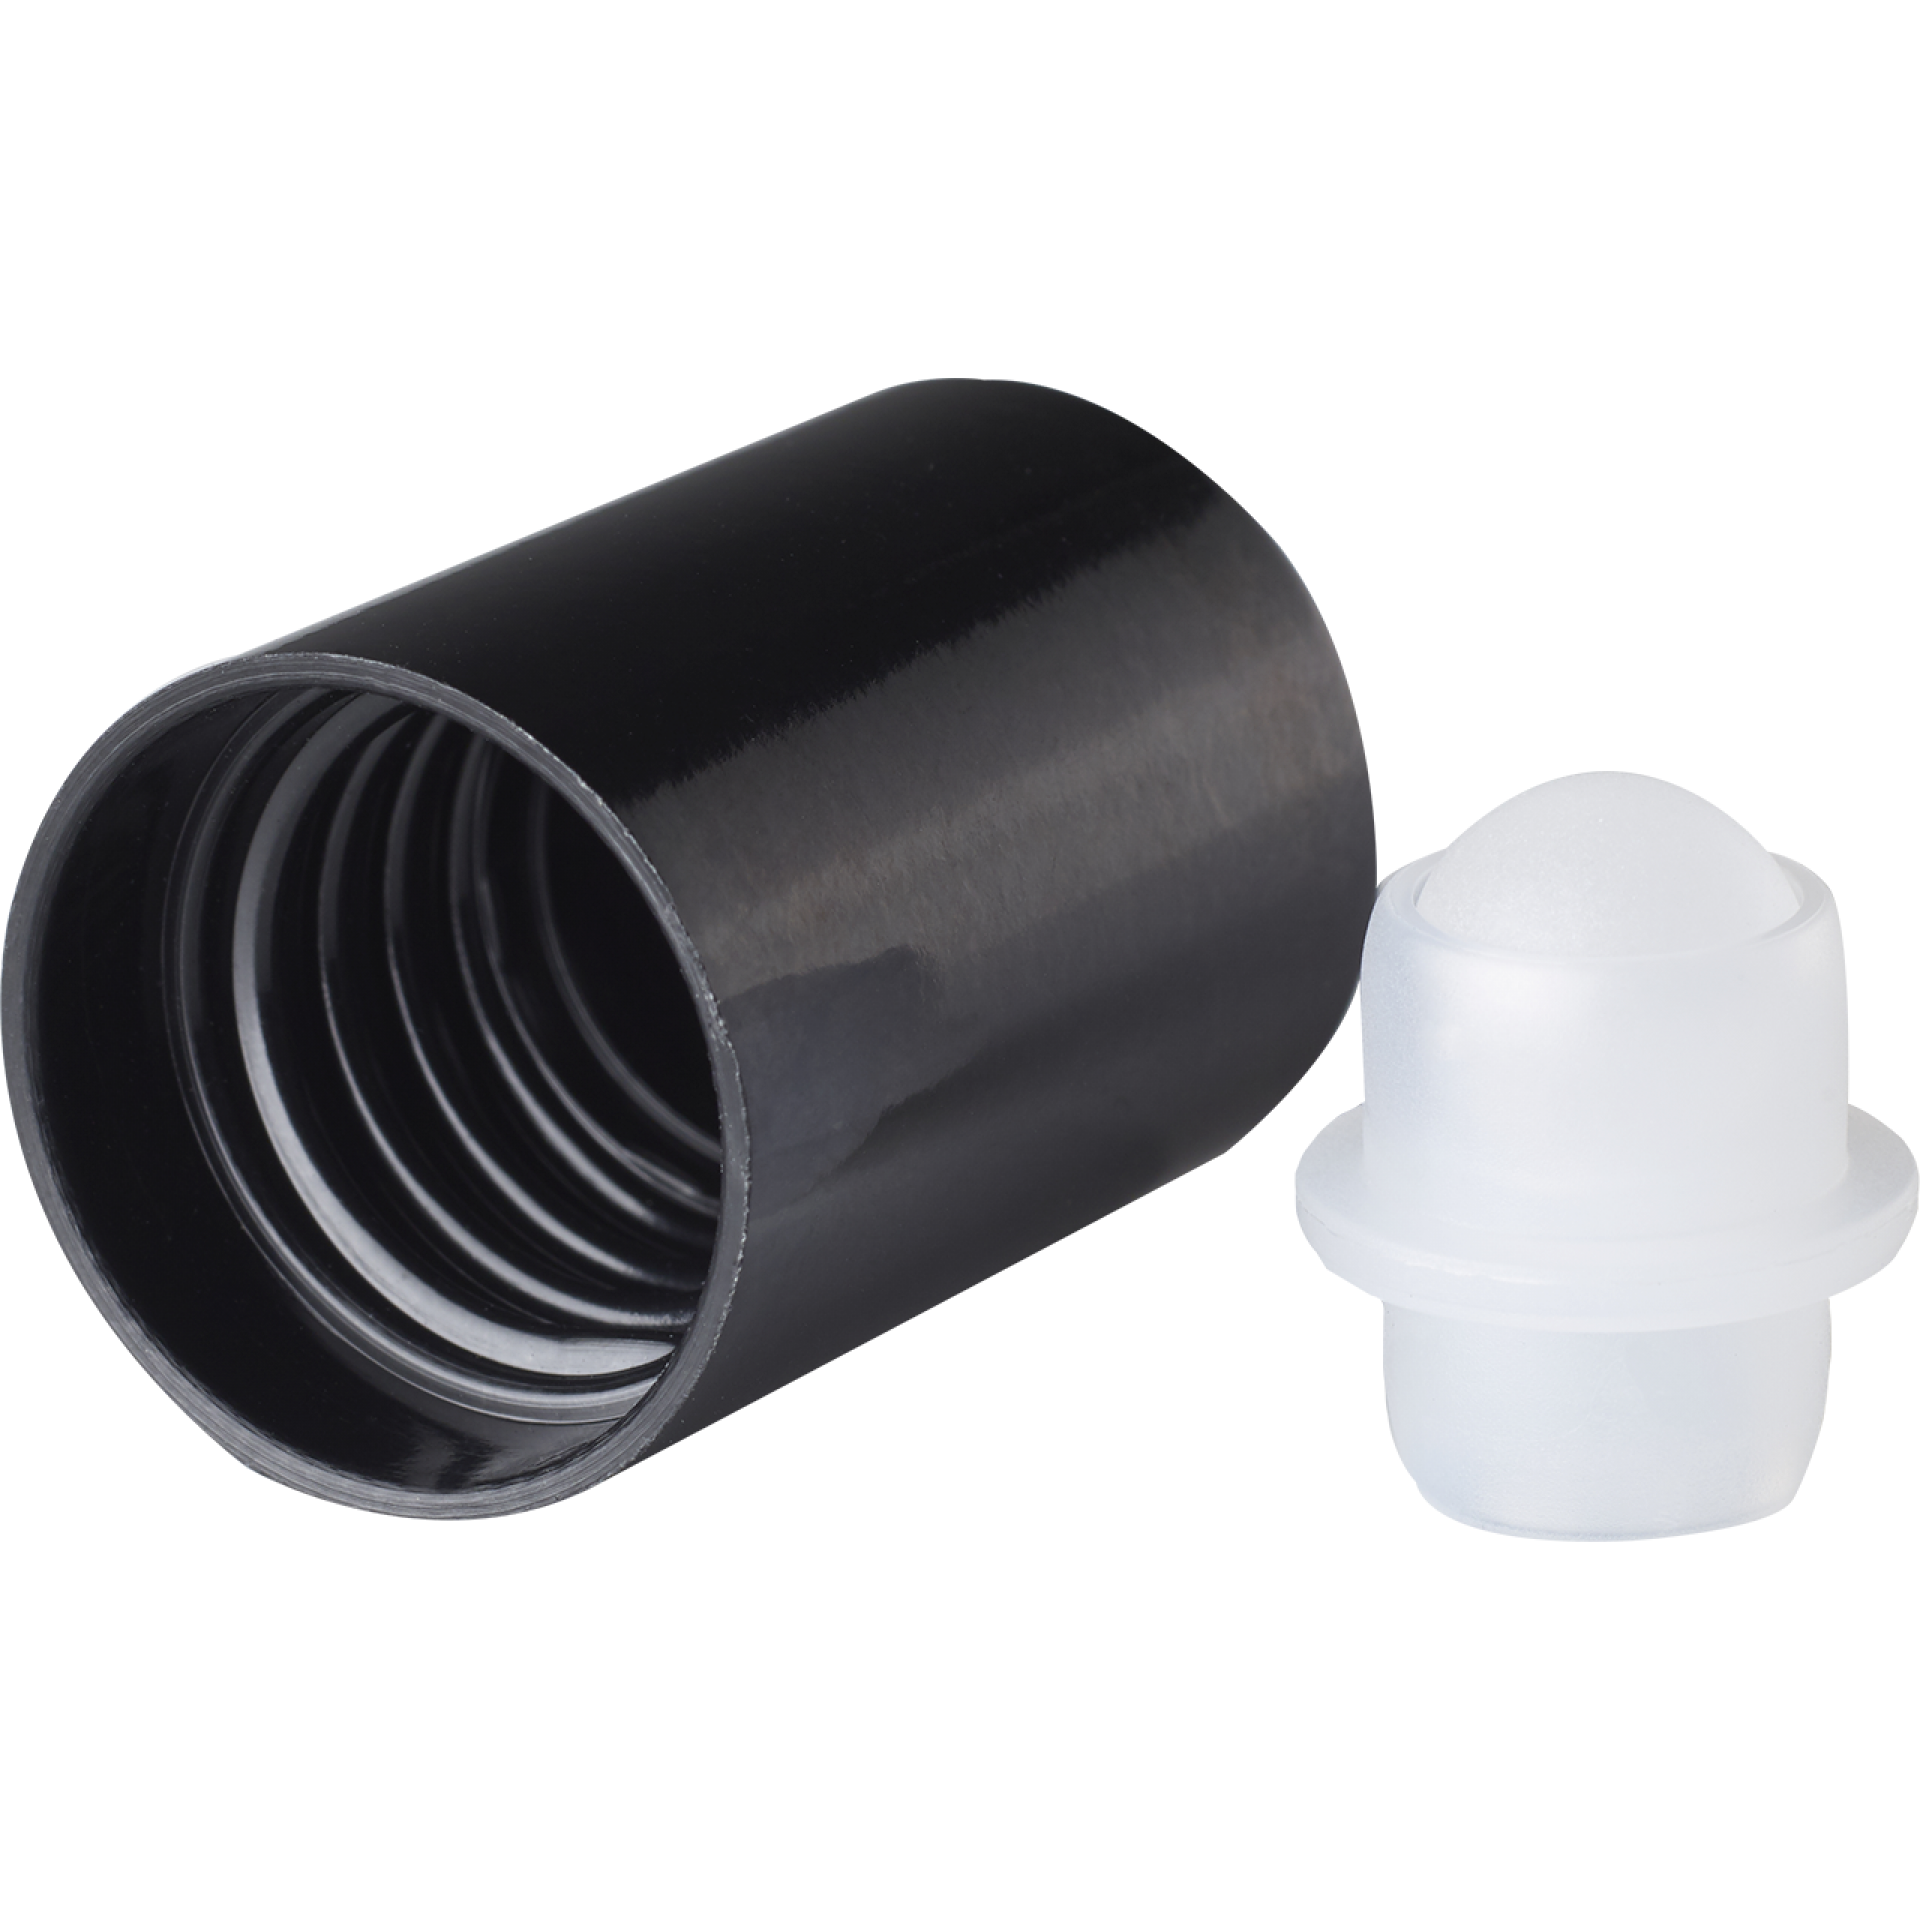 Roll-on cap DIN18, PP, black, natural fitment with white matt plastic ball, black cap for dropper bottles